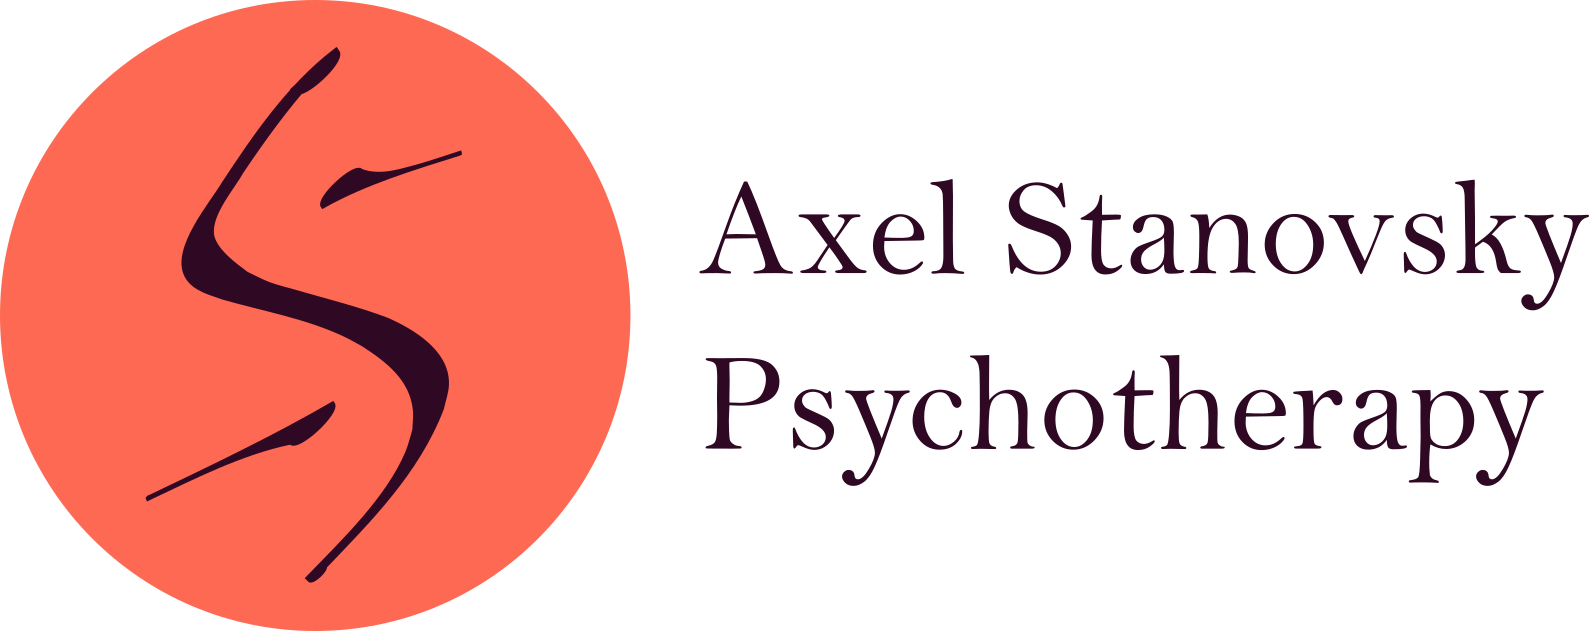 Axel Stanovsky Psychotherapy